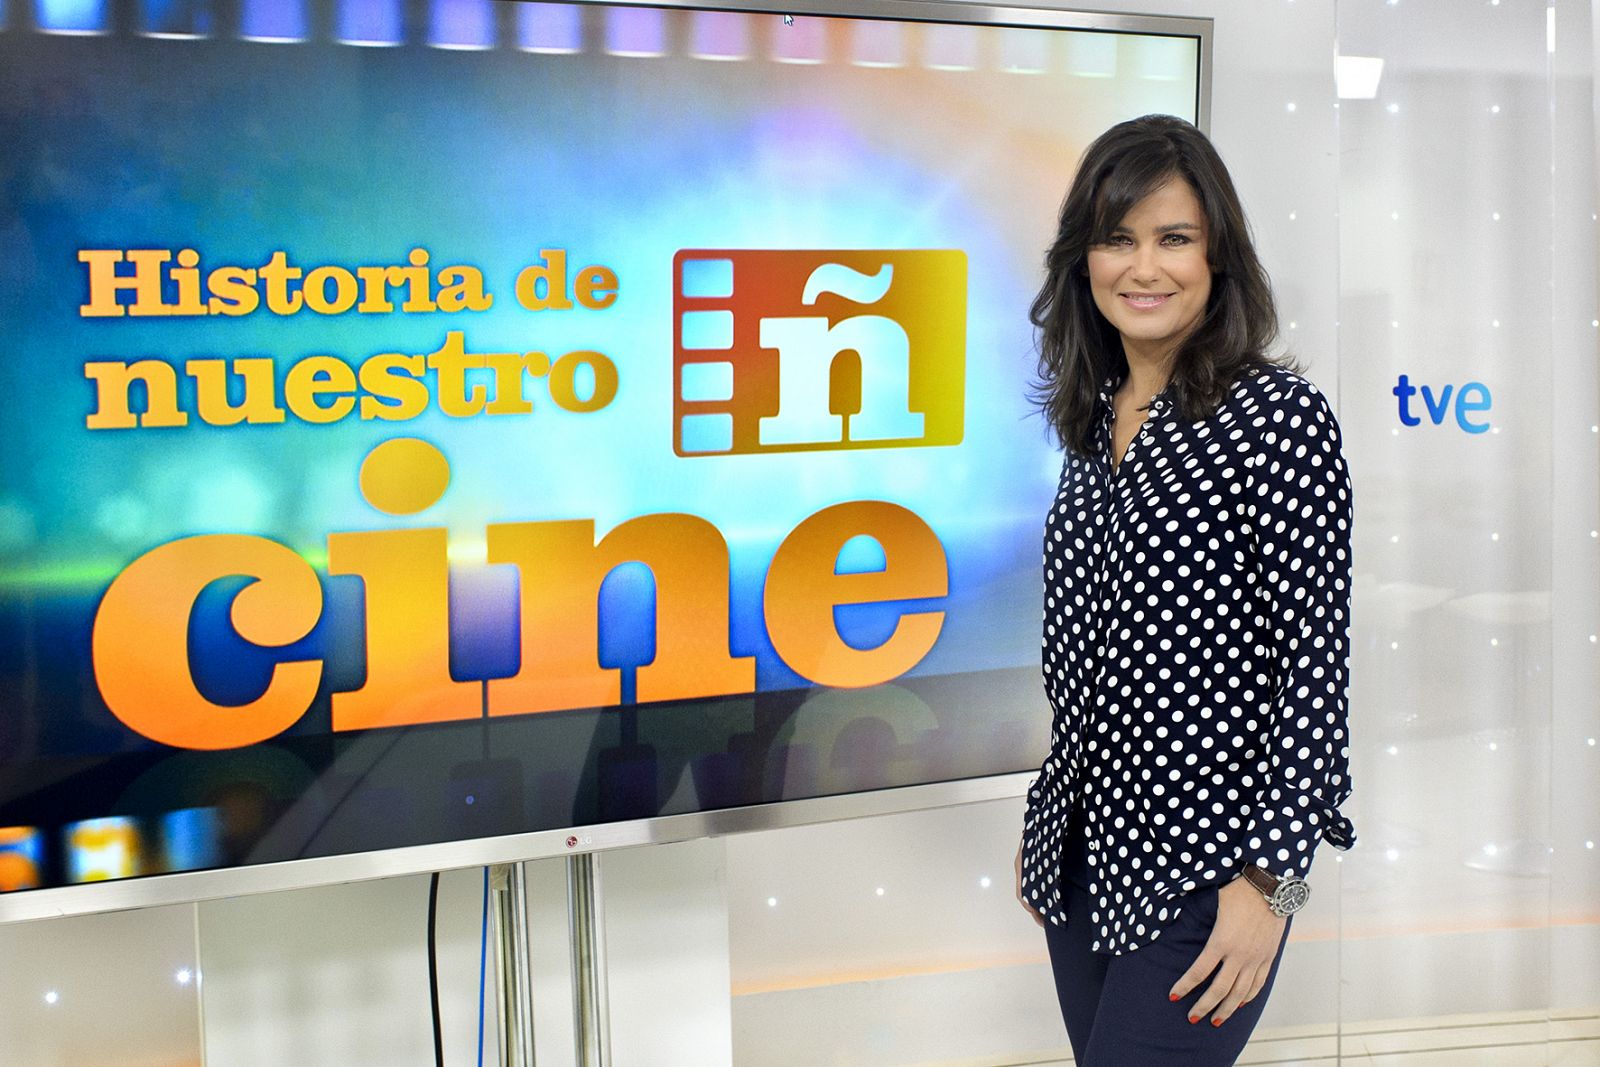 Elena S. Sánchez, presentadora de 'Historia de nuestro cine'